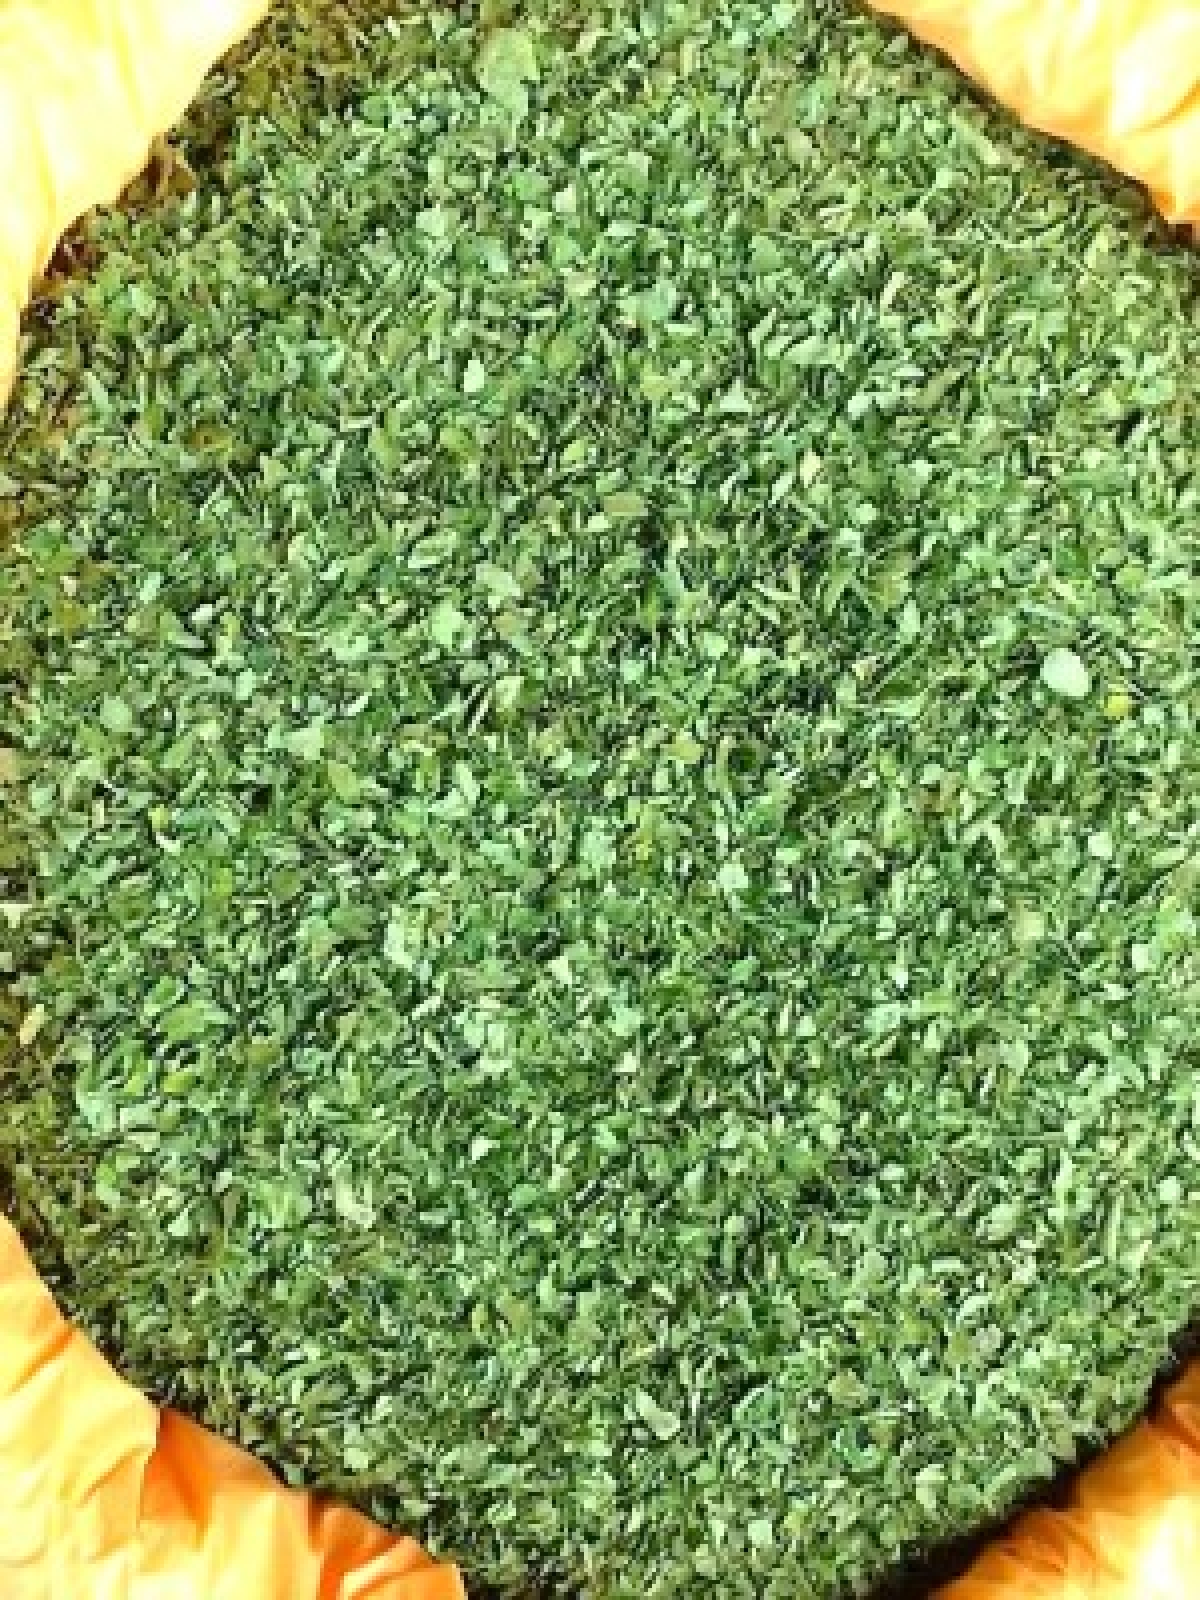 Dried moringa